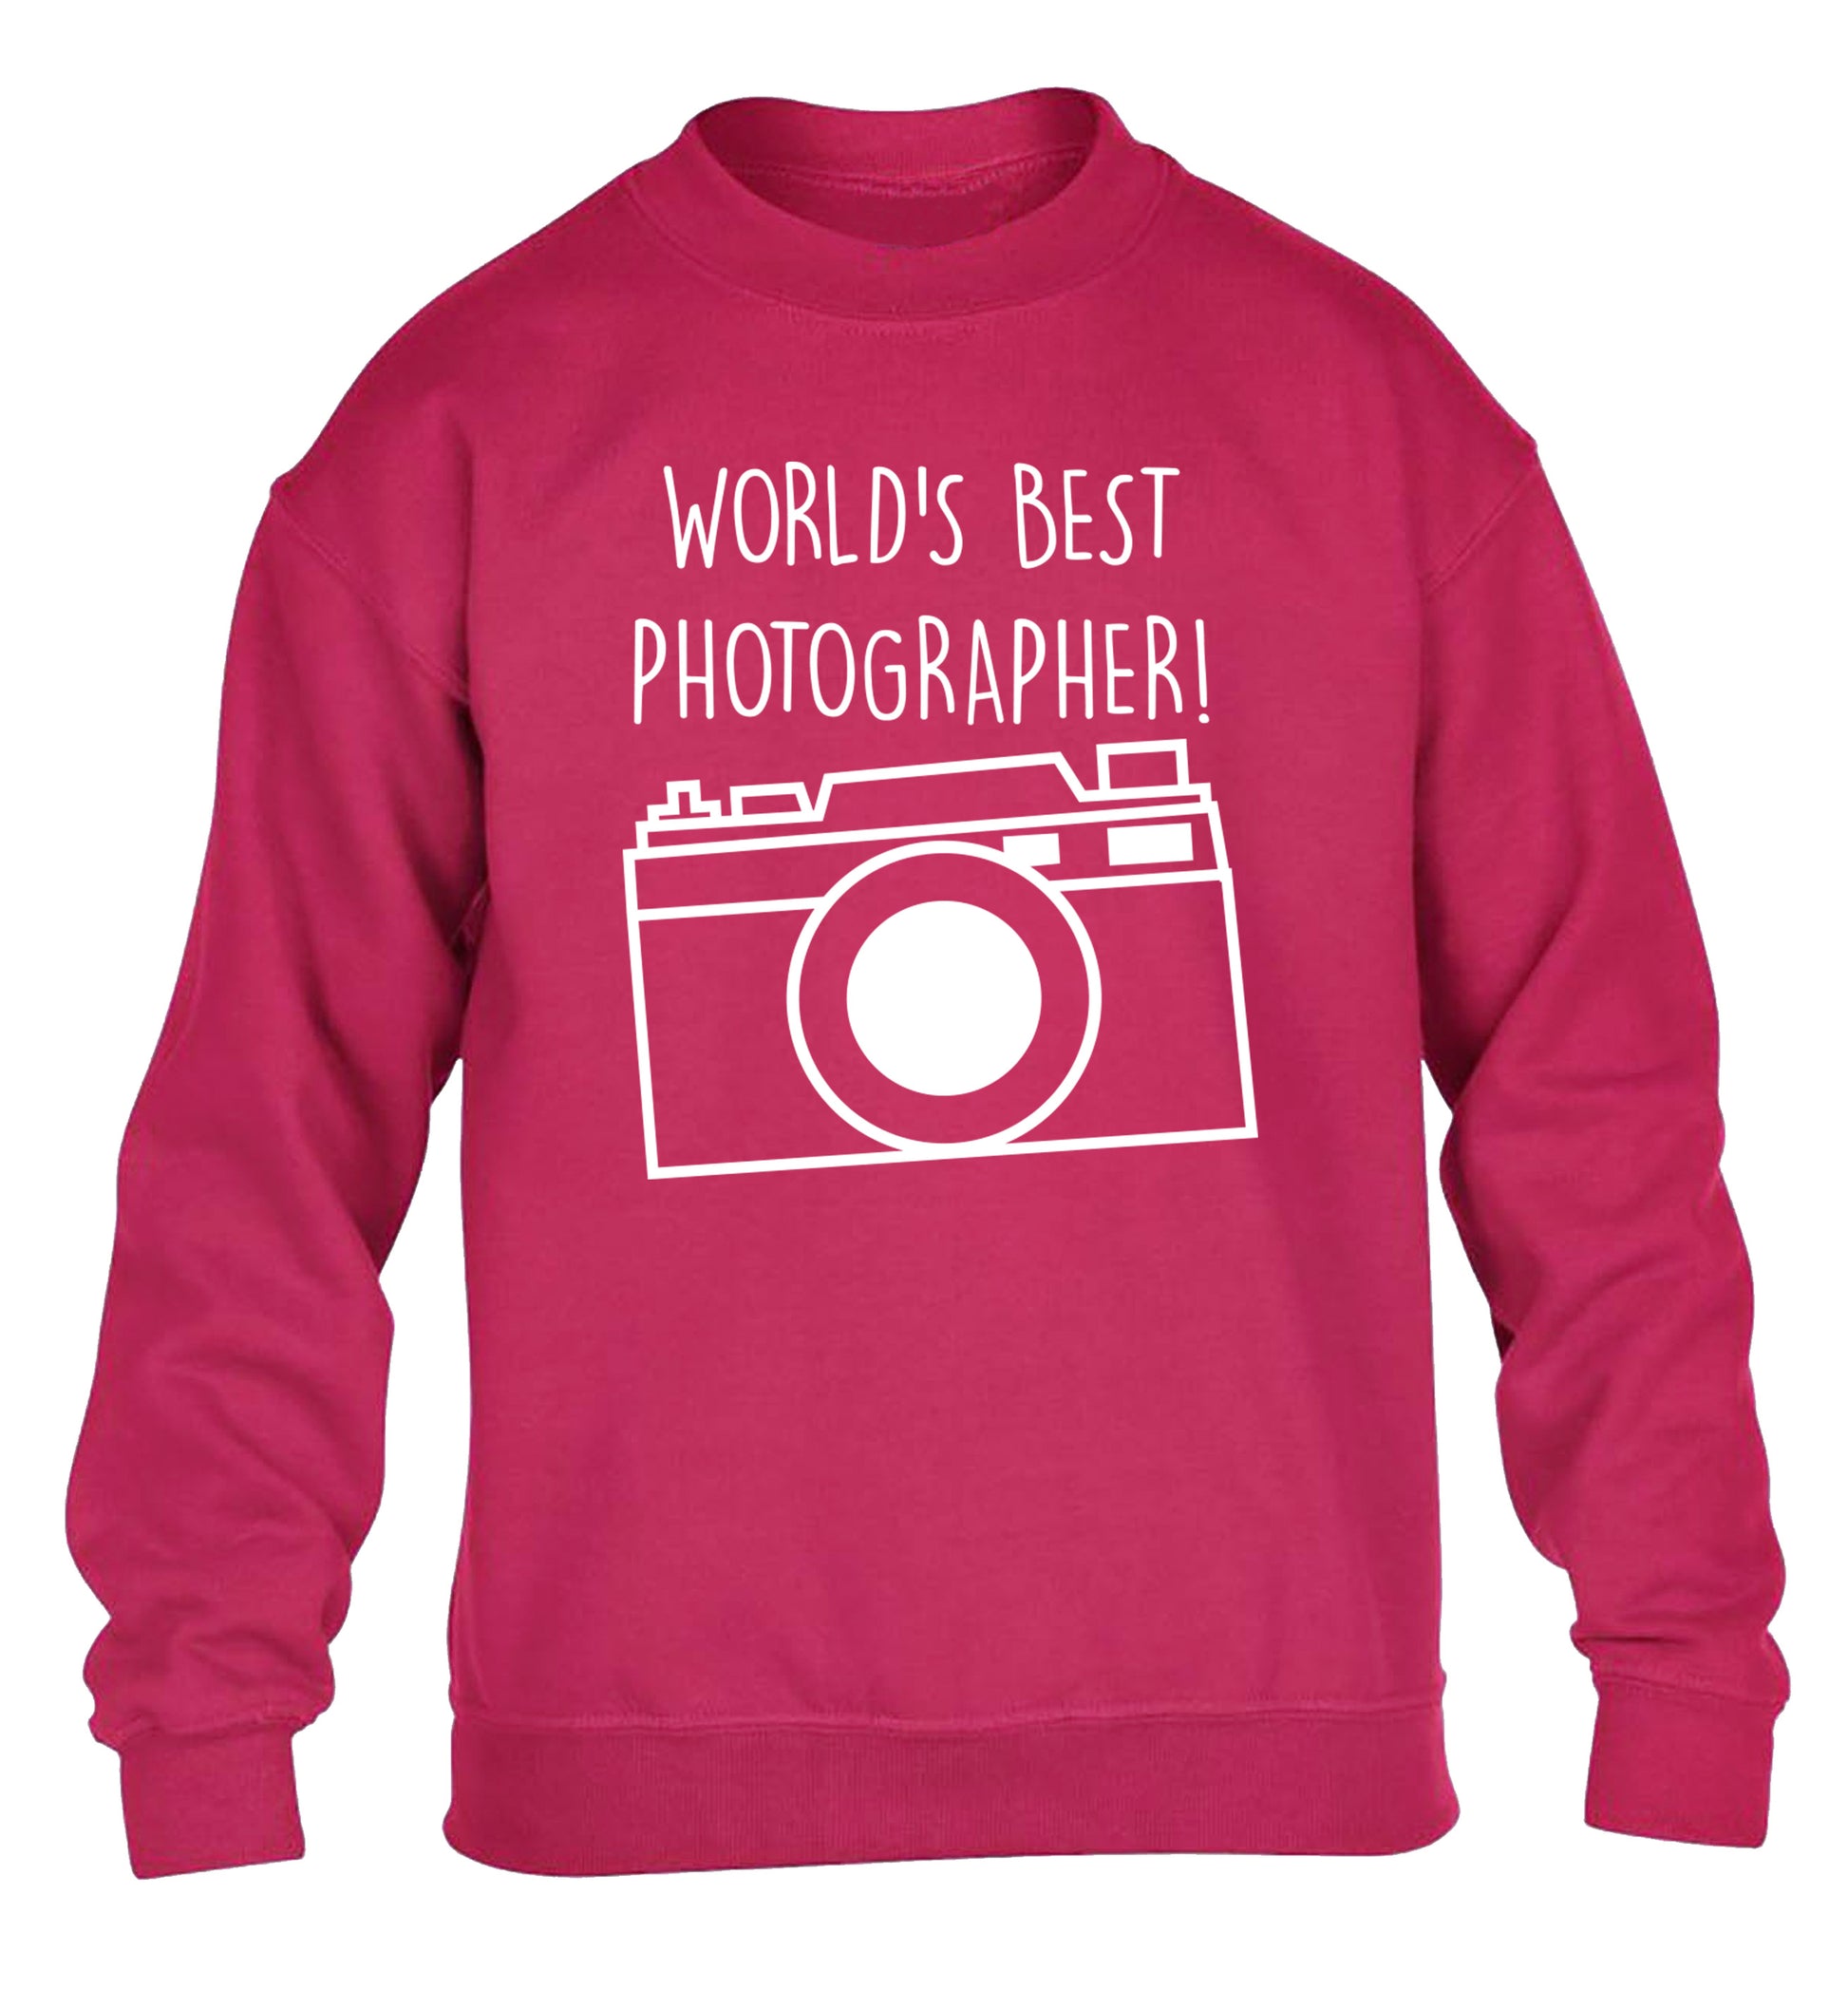 Worlds best photographer  children's pink sweater 12-13 Years